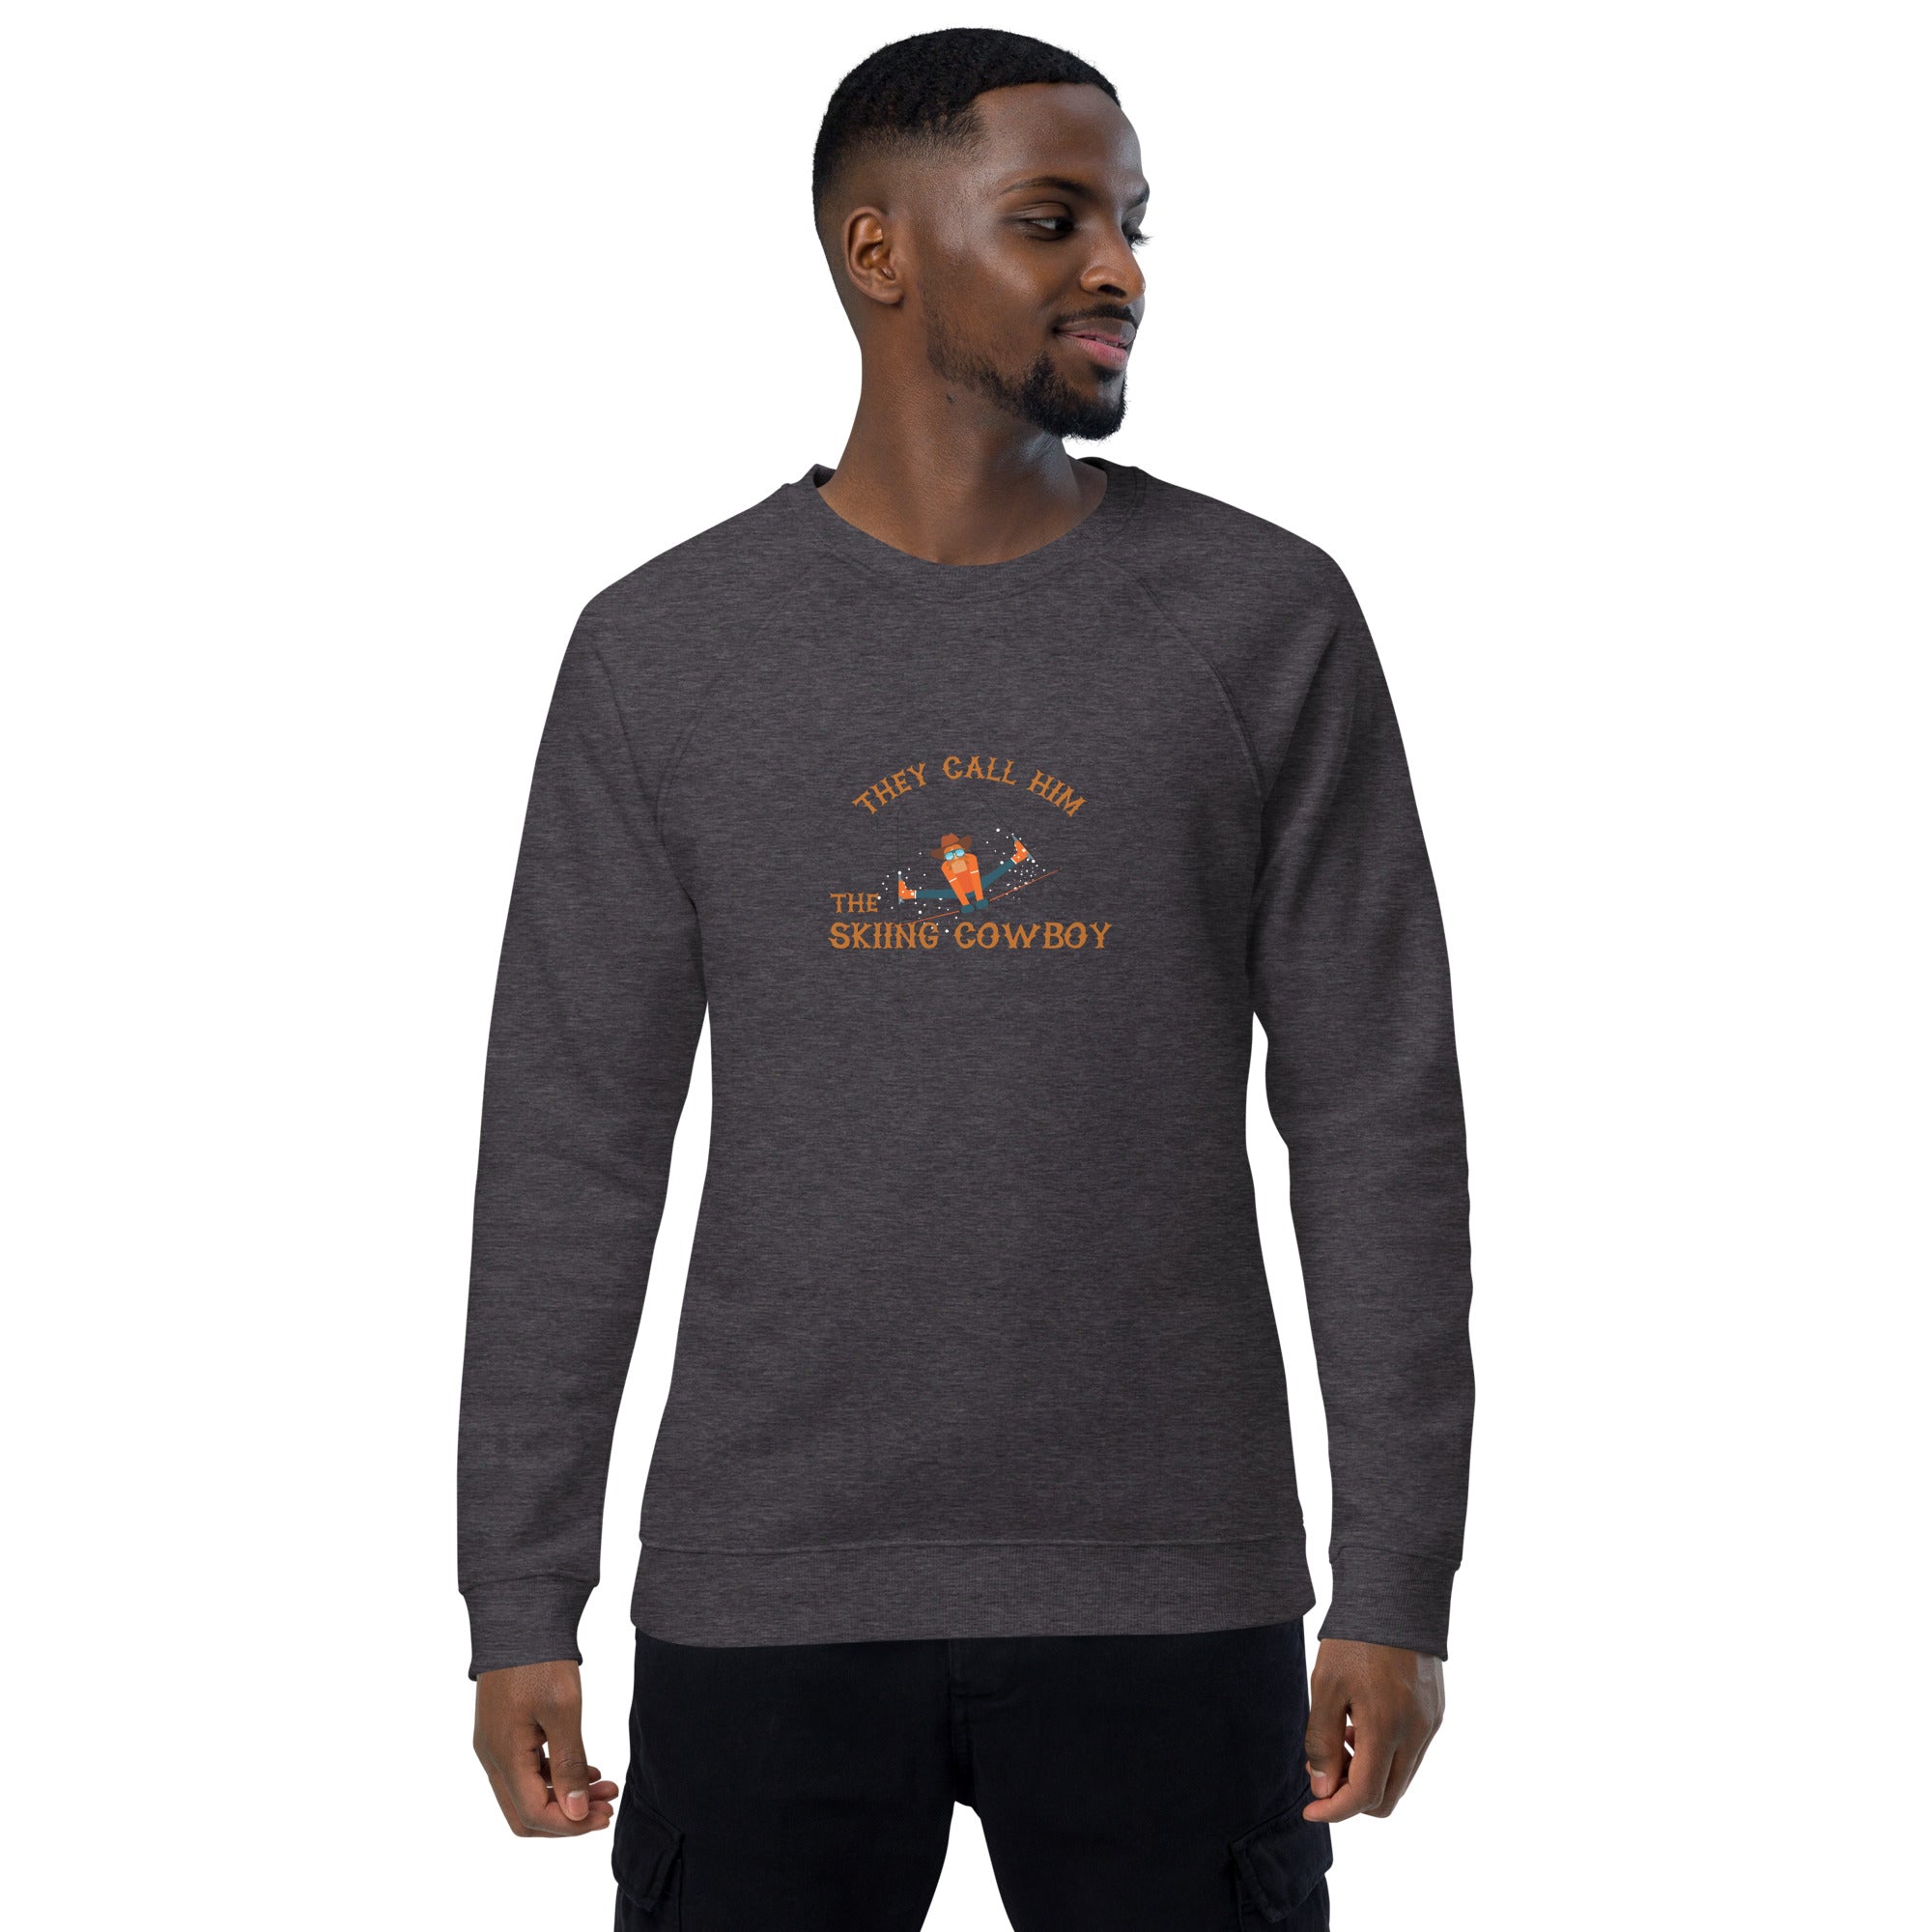 Unisex organic raglan sweatshirt Hot Dogger